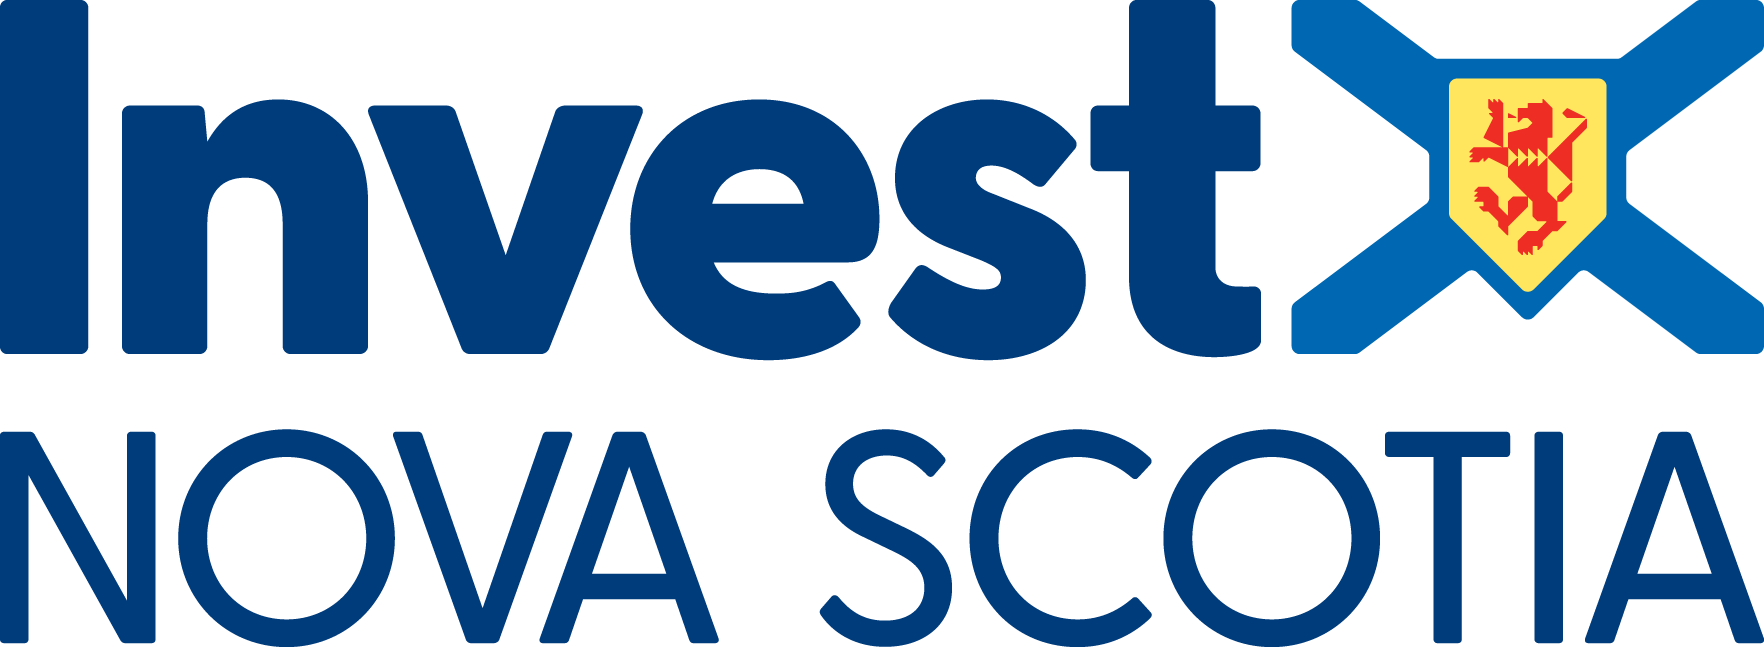 Nova Scotia Business Logo